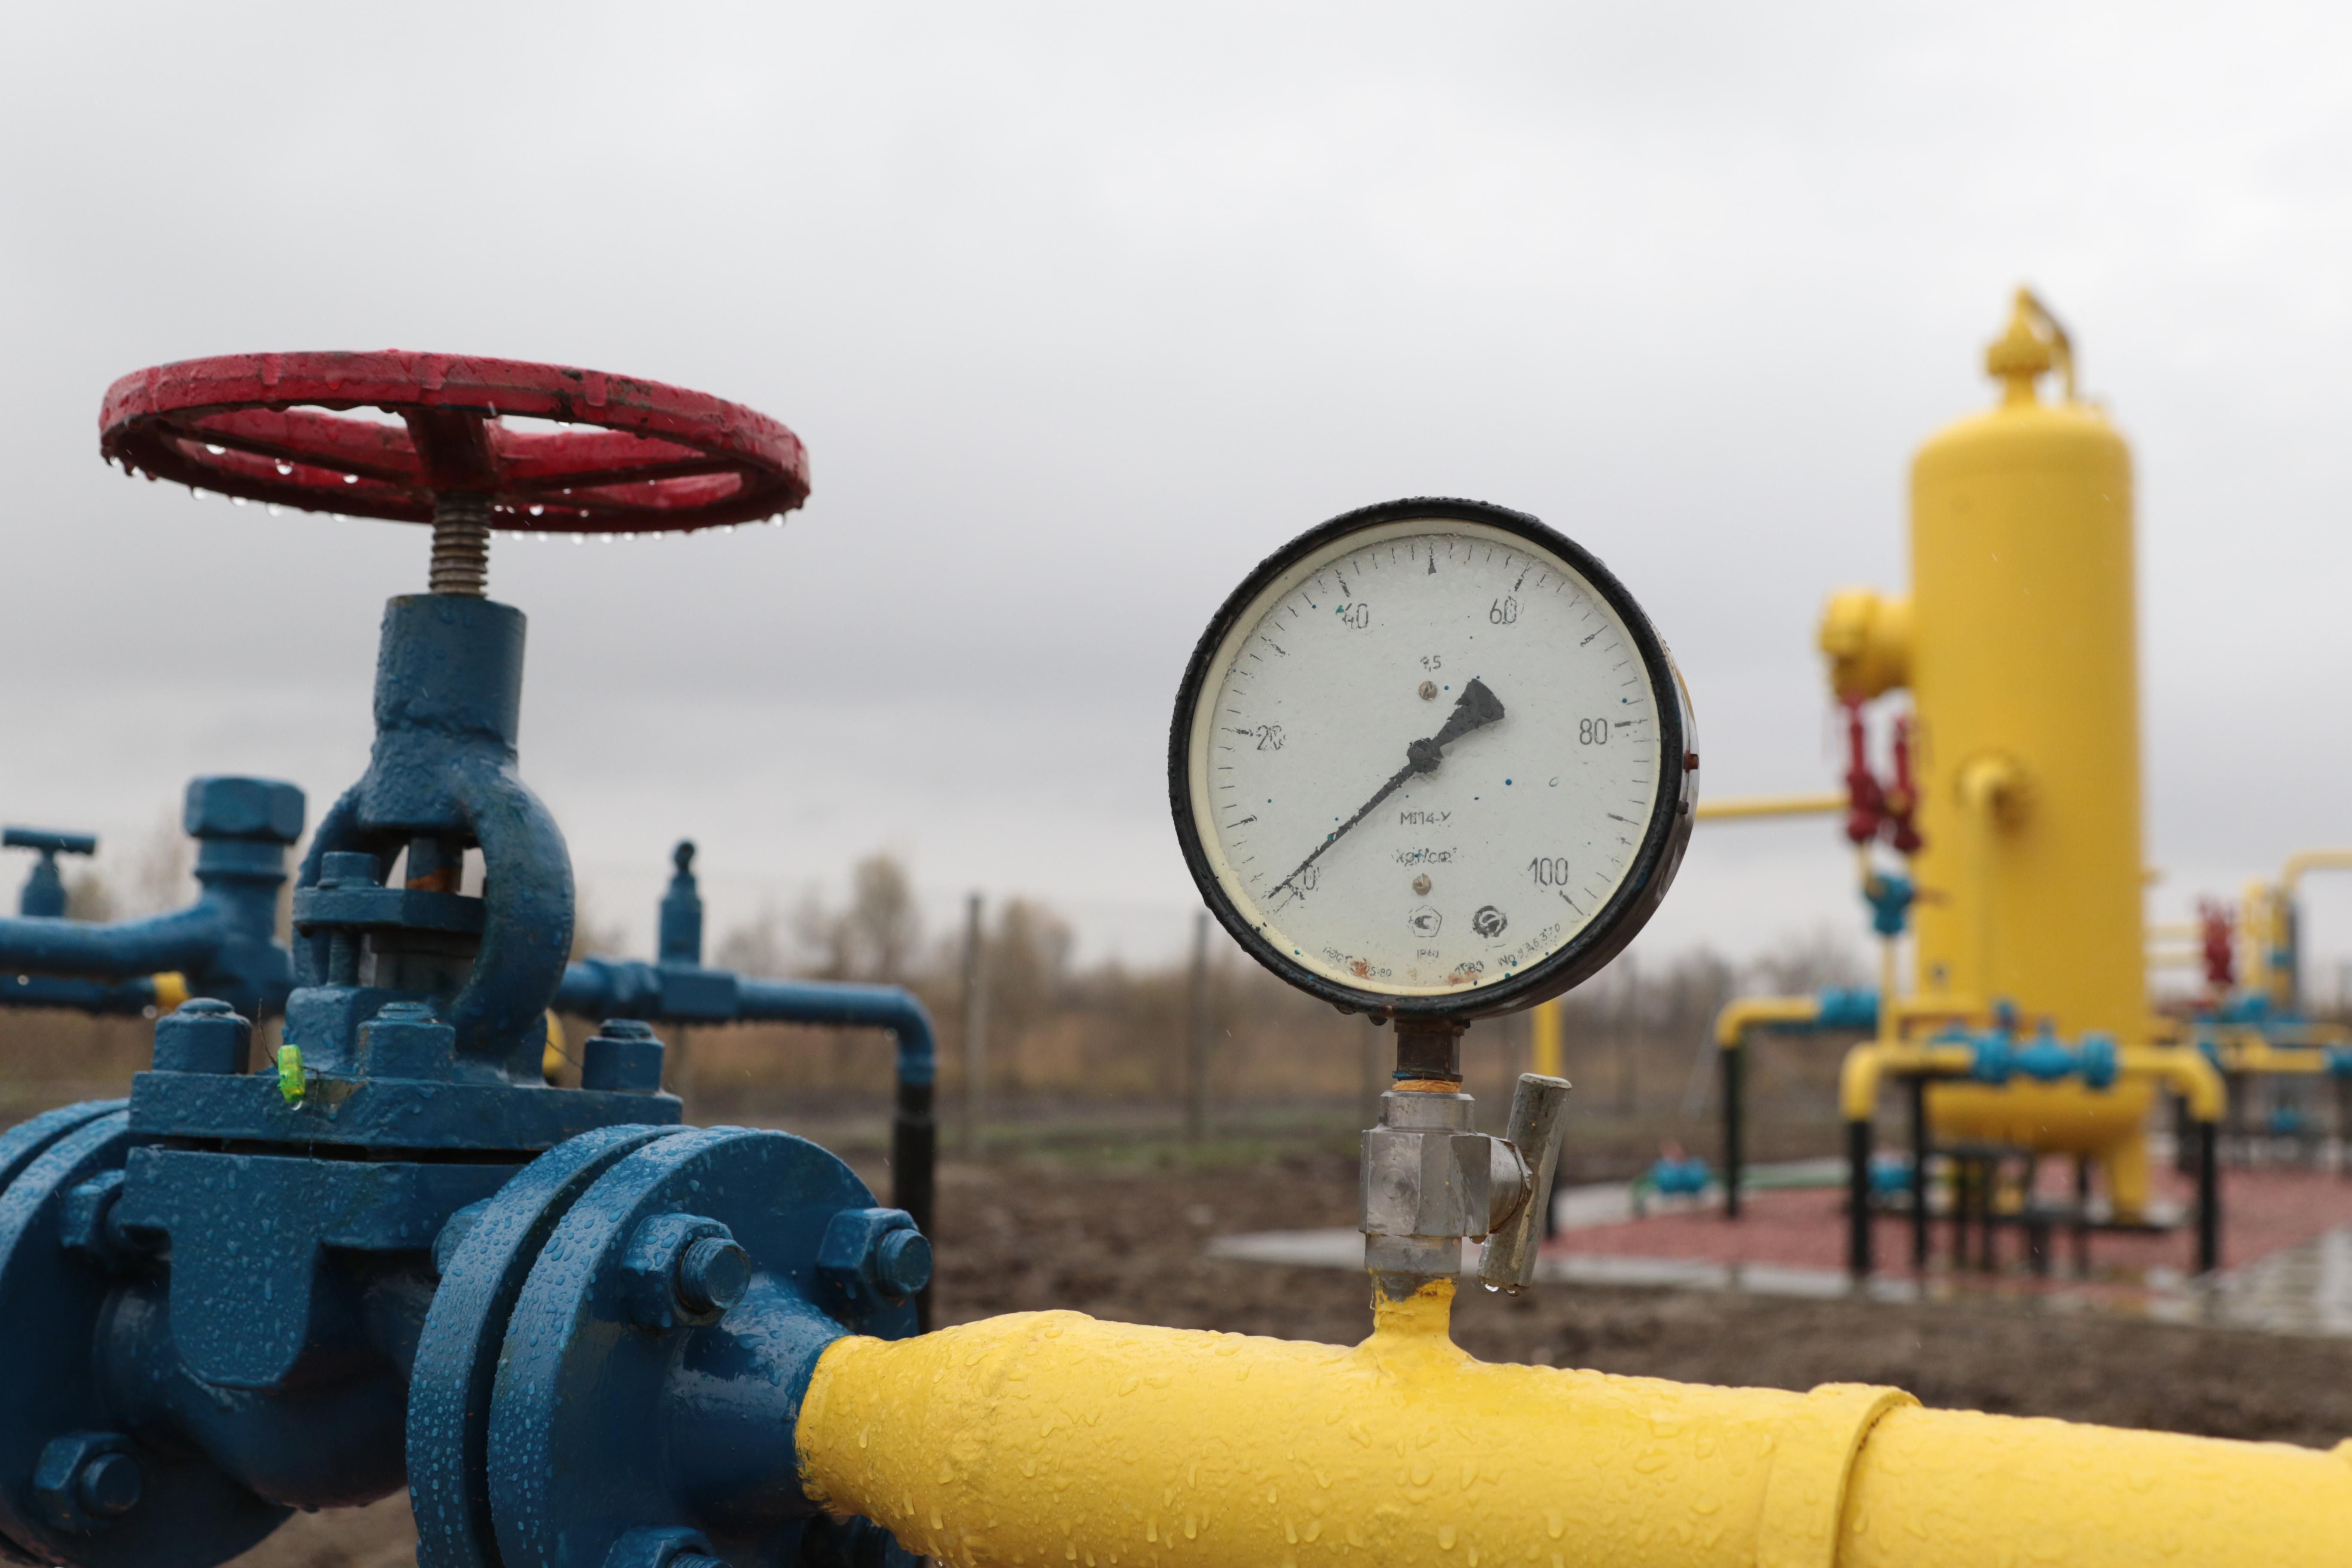 Нафтогаз транзит газа. Транзит газа. Транзит газа через Украину. Украинский Транзит газа. Газовый кризис.